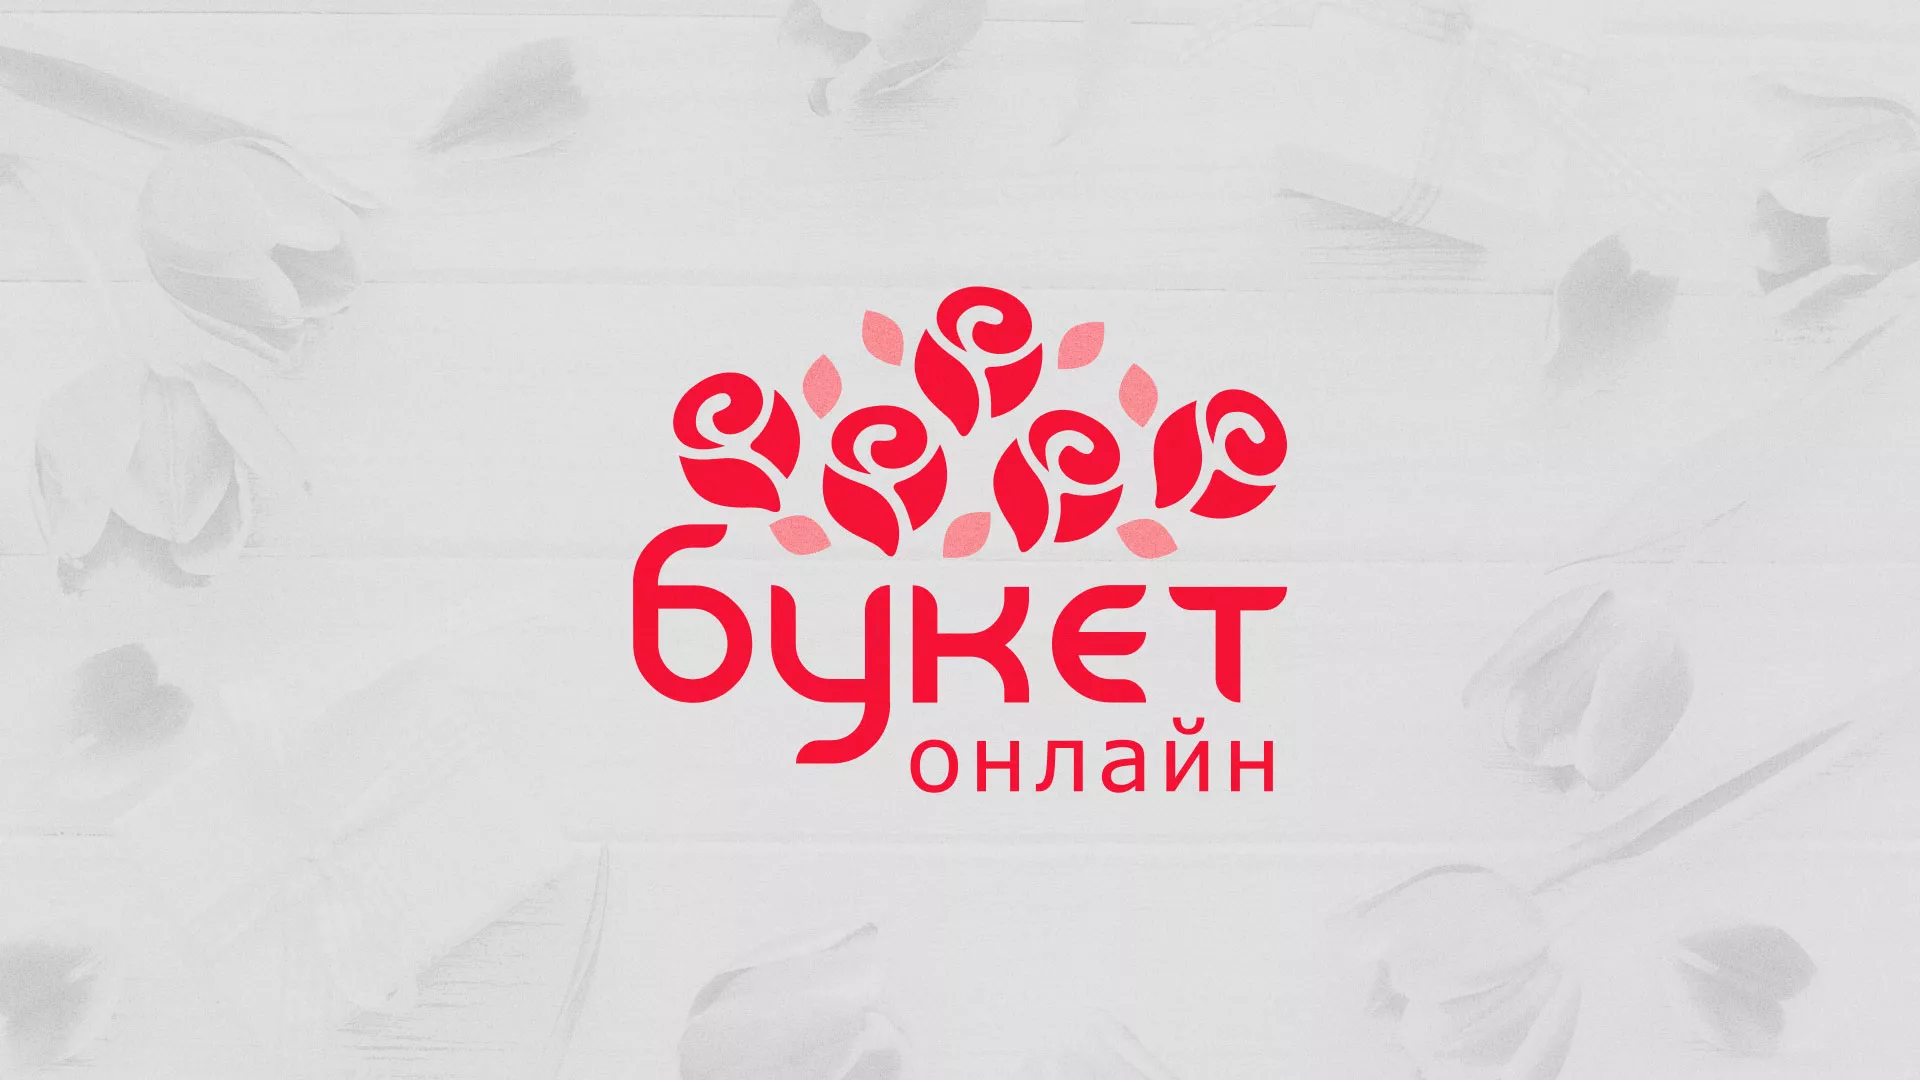 Создание интернет-магазина «Букет-онлайн» по цветам в Мирном